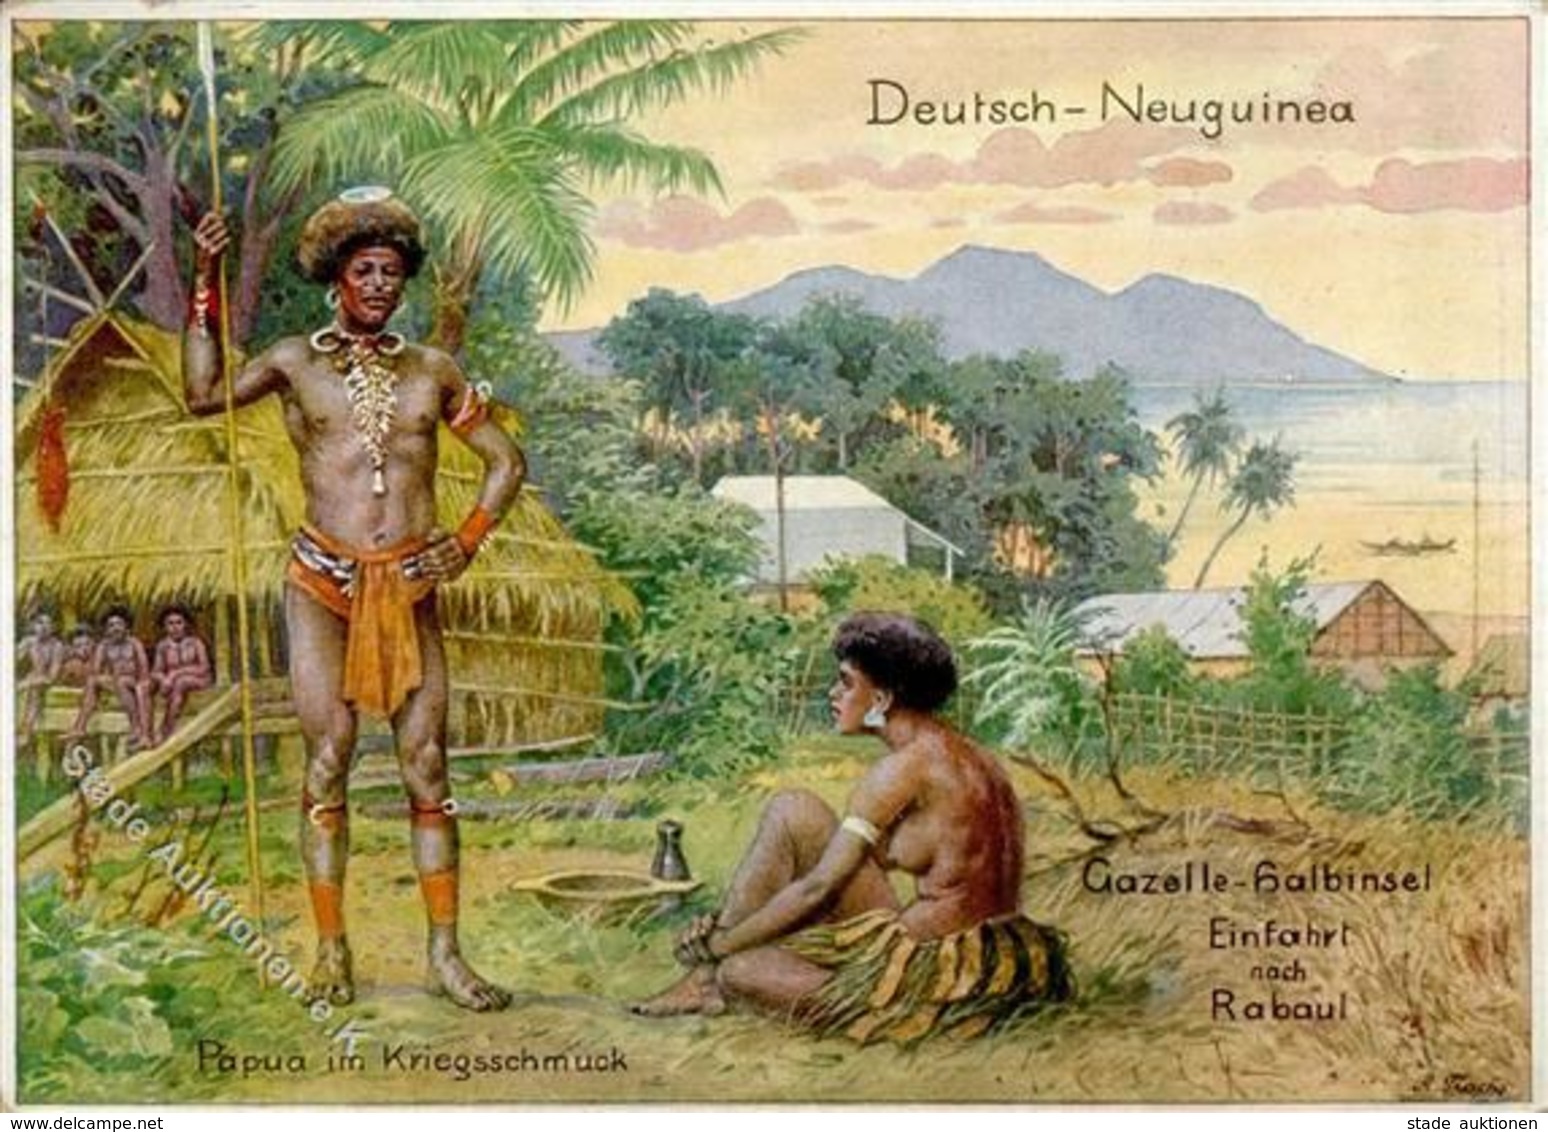 Kolonien DNG - DEUTSCH-NEUGUINEA - Gazelle-Halbinsel Einfahrt Nach Rabaul I-II Colonies - Asie